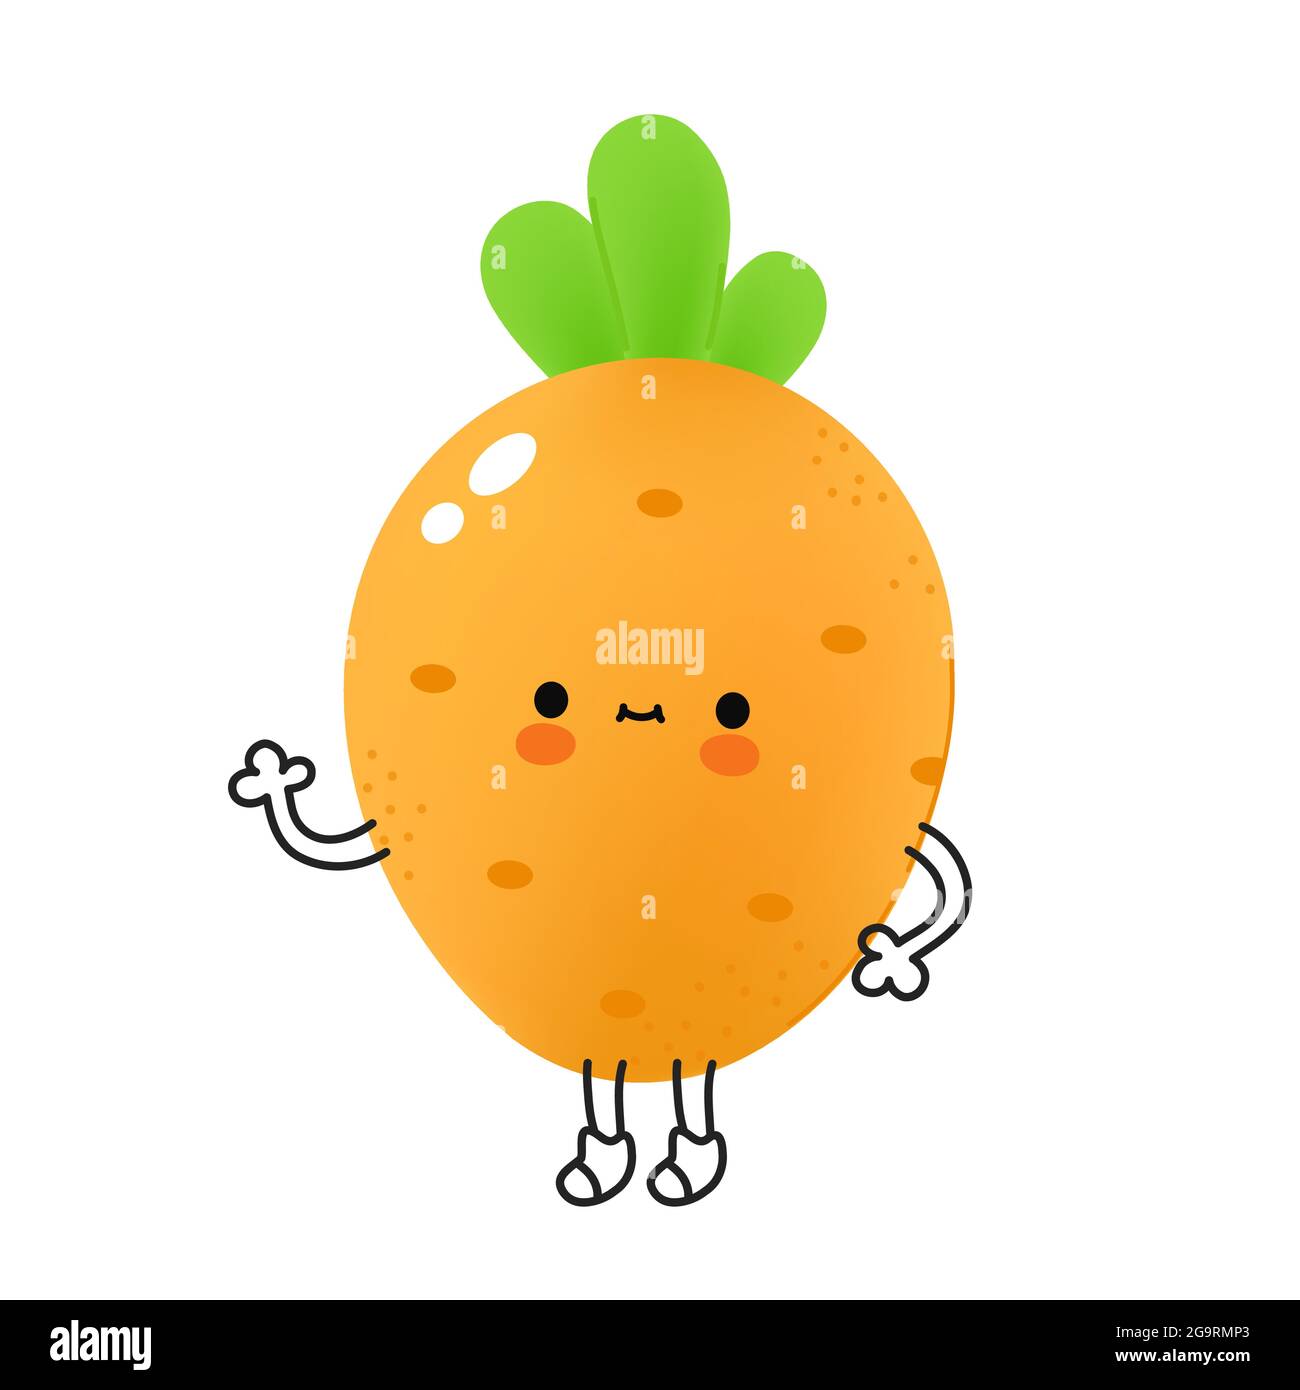 Lindo y divertido vegetal de zanahoria con cara. Icono de ilustración de  personaje de caricatura vectorial kawaii doodle. Concepto de mascota de  personaje de dibujos animados de verduras de zanahoria. Aislado sobre